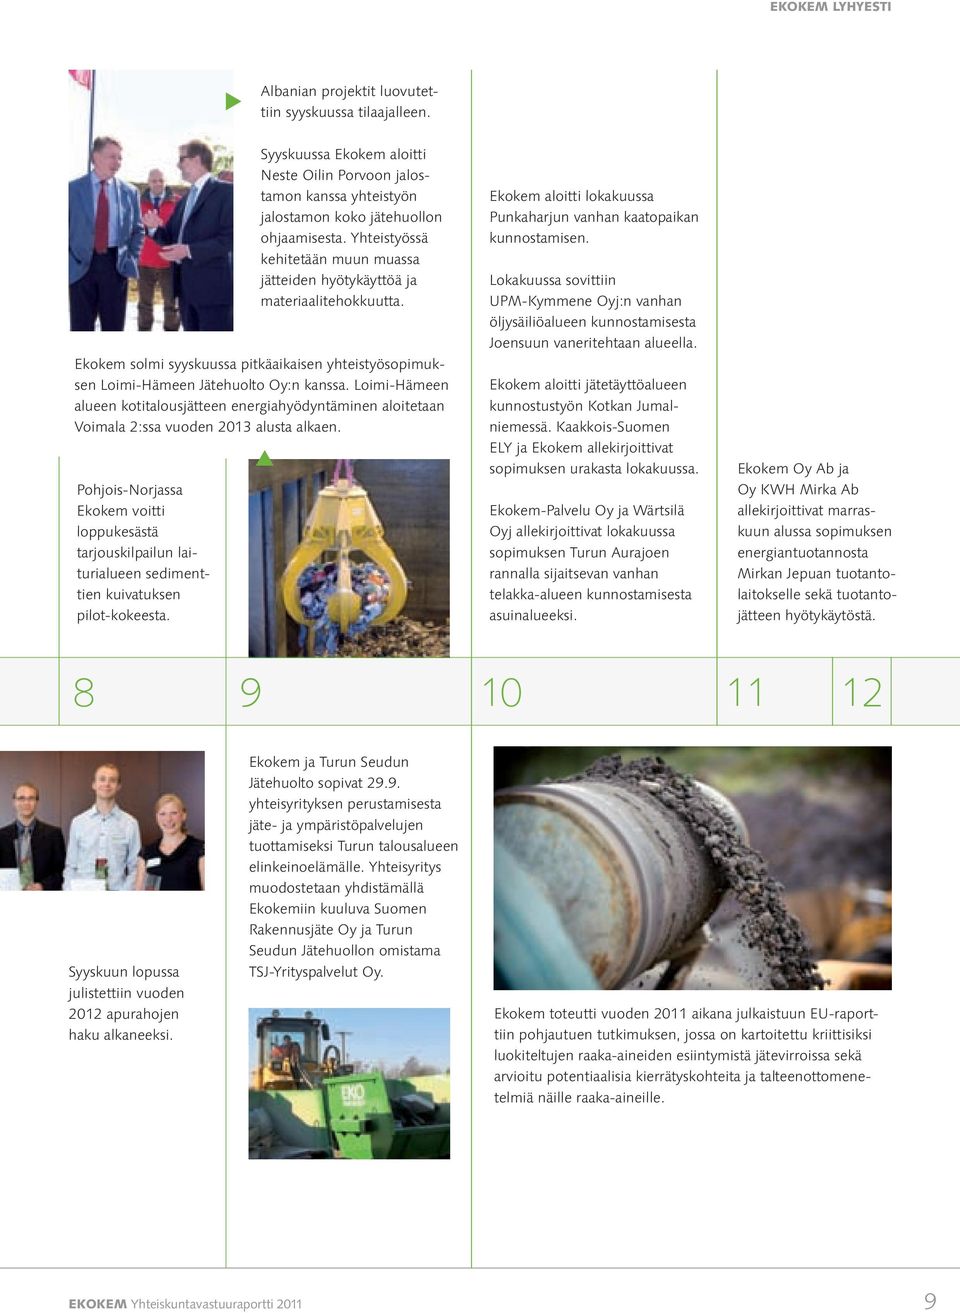 Yhteistyössä kehitetään muun muassa jätteiden hyötykäyttöä ja materiaalitehokkuutta. Ekokem solmi syyskuussa pitkäaikaisen yhteistyösopimuksen Loimi Hämeen Jätehuolto Oy:n kanssa.